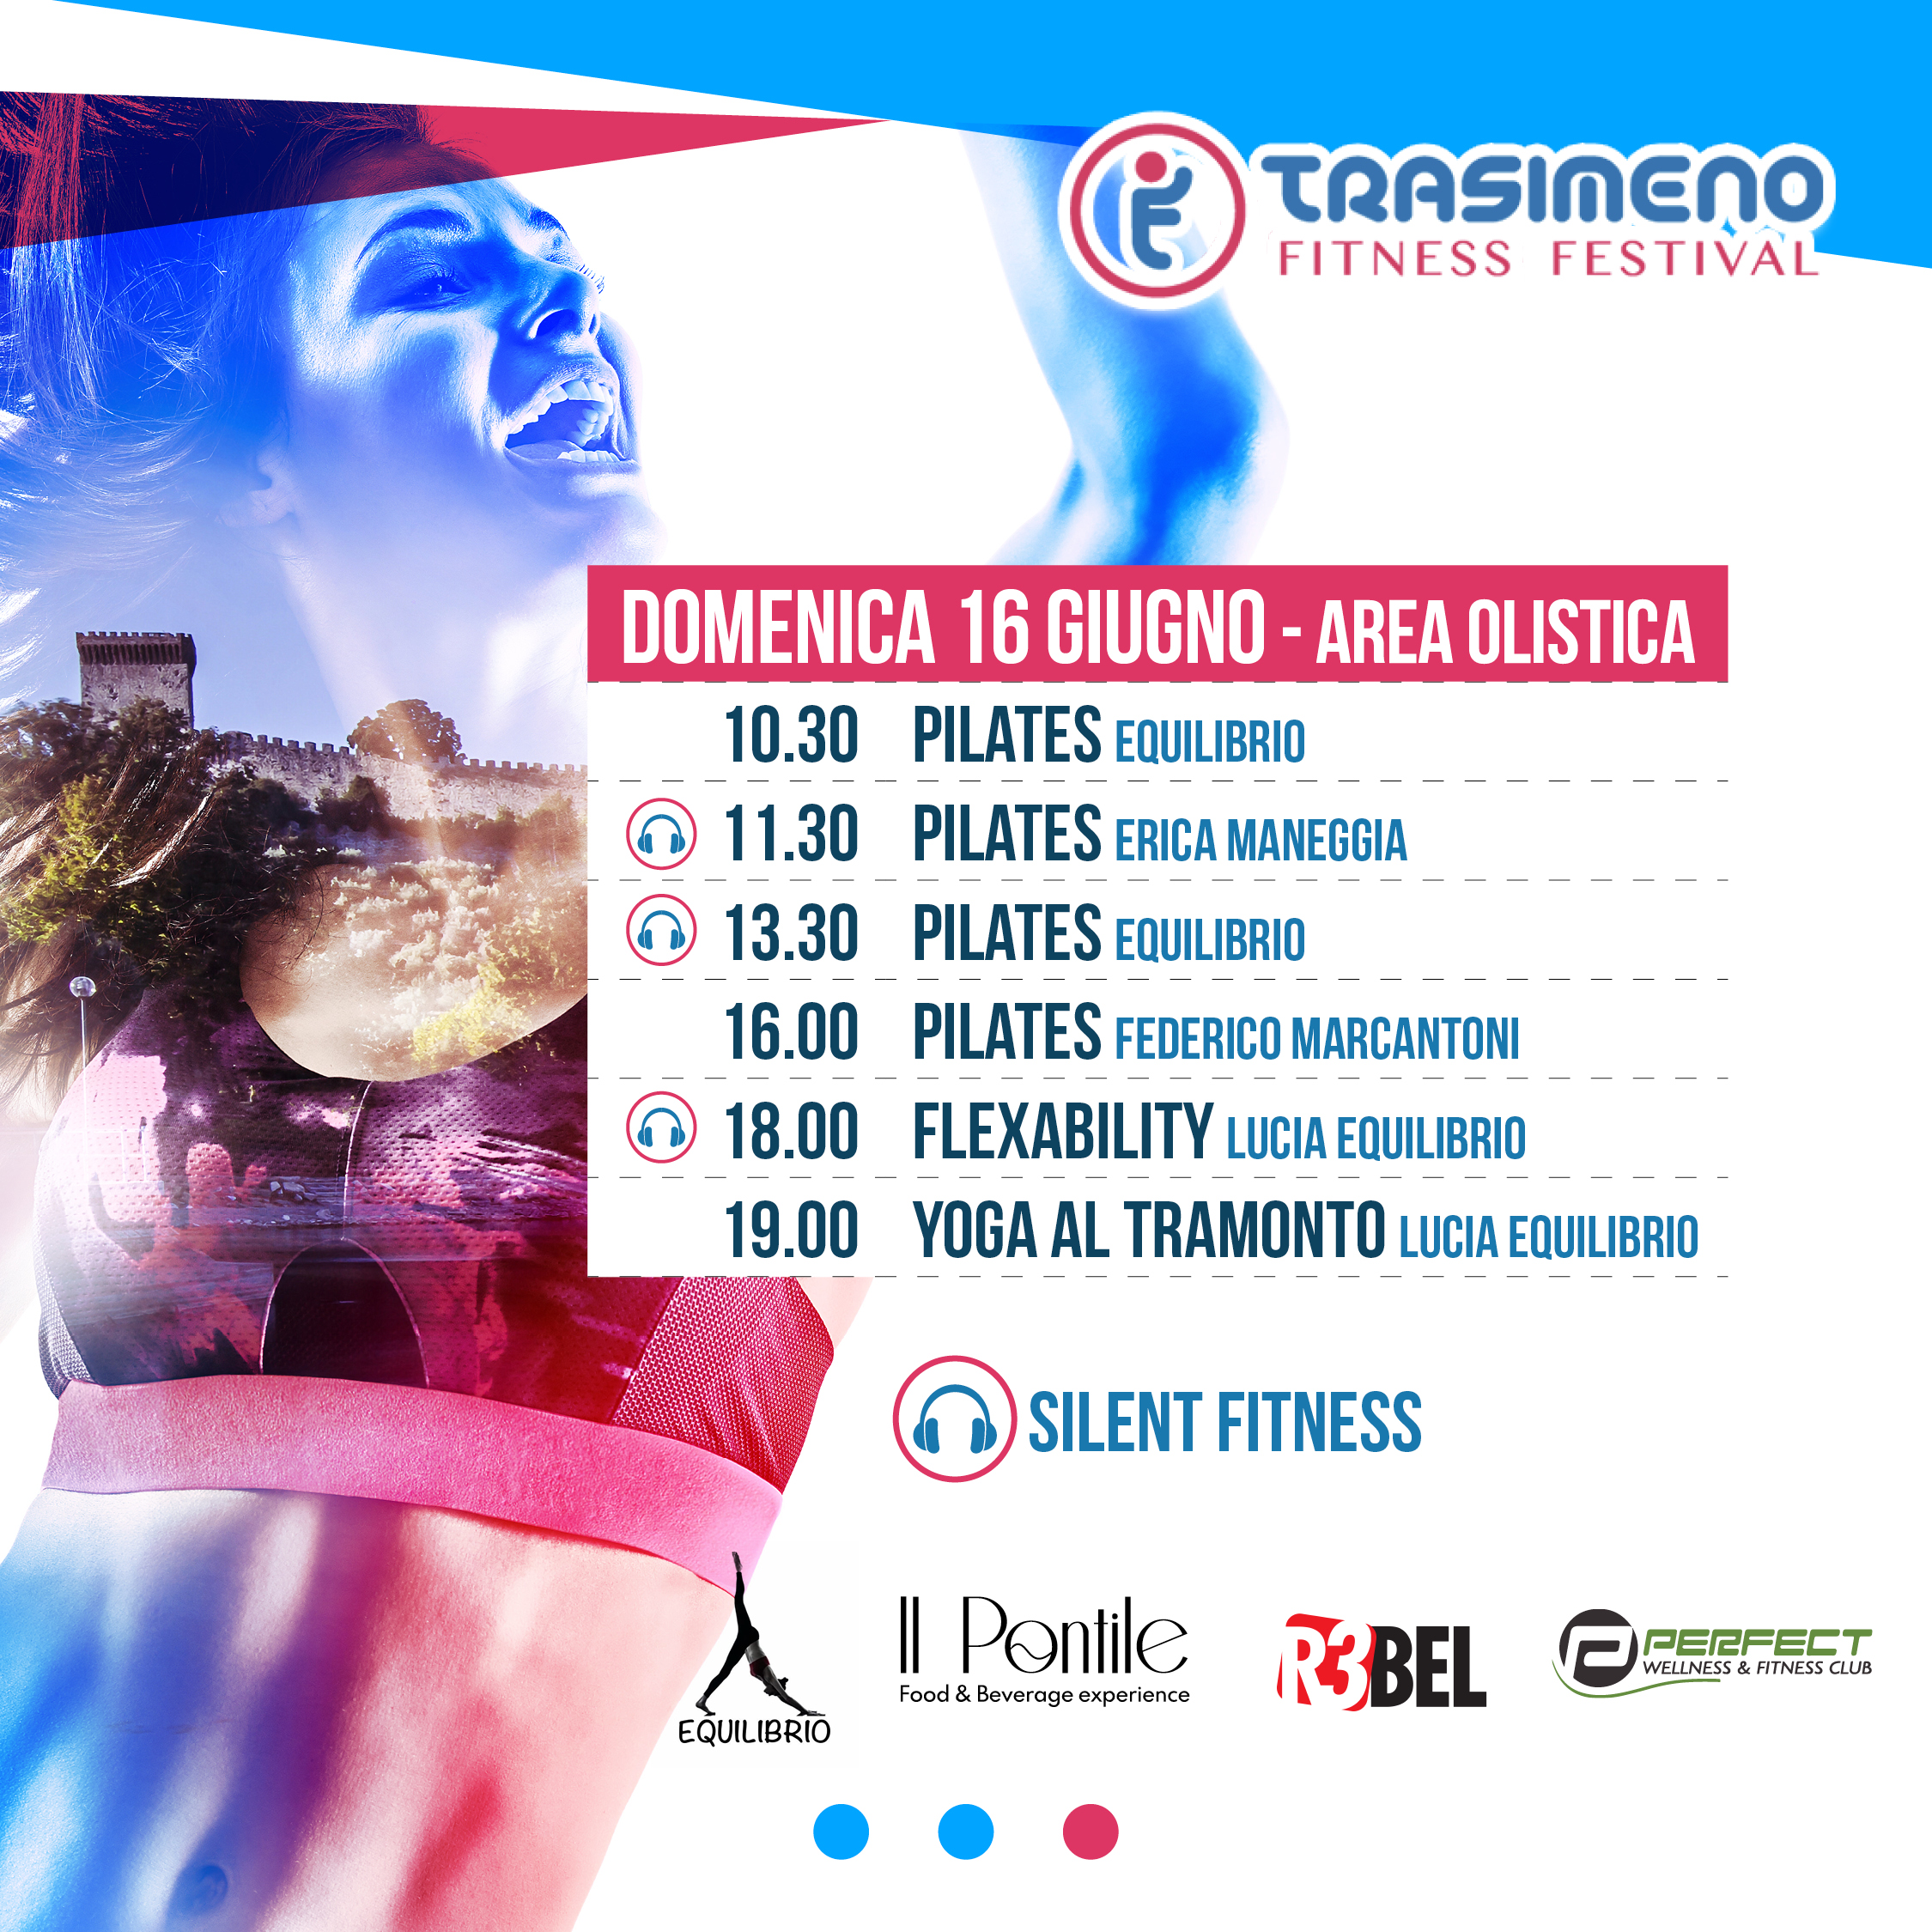 Programma Area Olistica - Trasimeno Fitness Festival - Palestra Perfect (3)